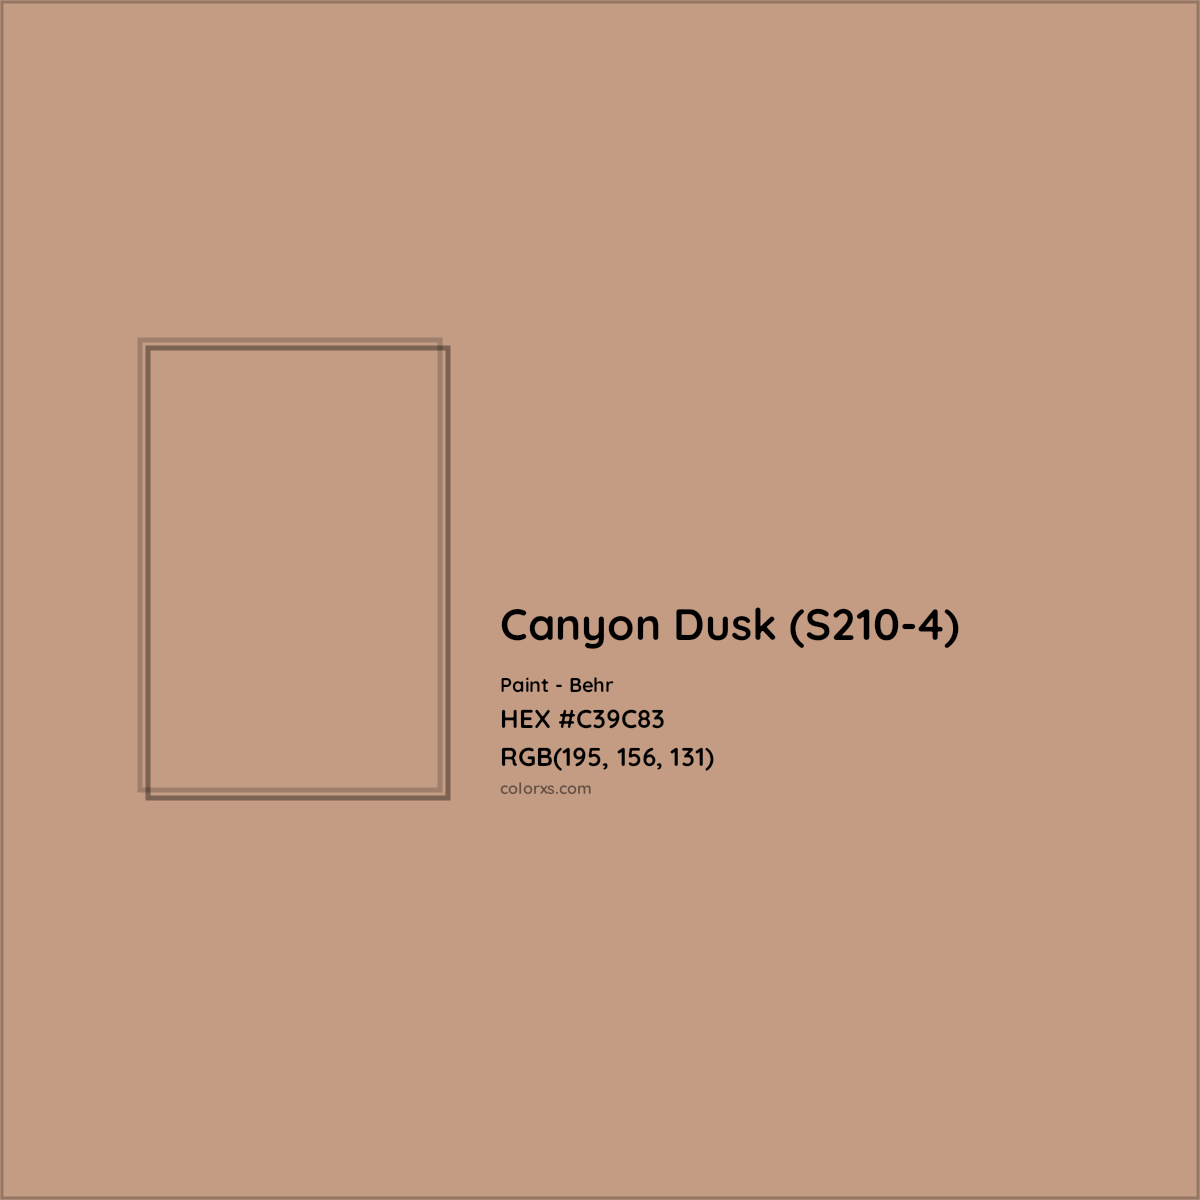 HEX #C39C83 Canyon Dusk (S210-4) Paint Behr - Color Code